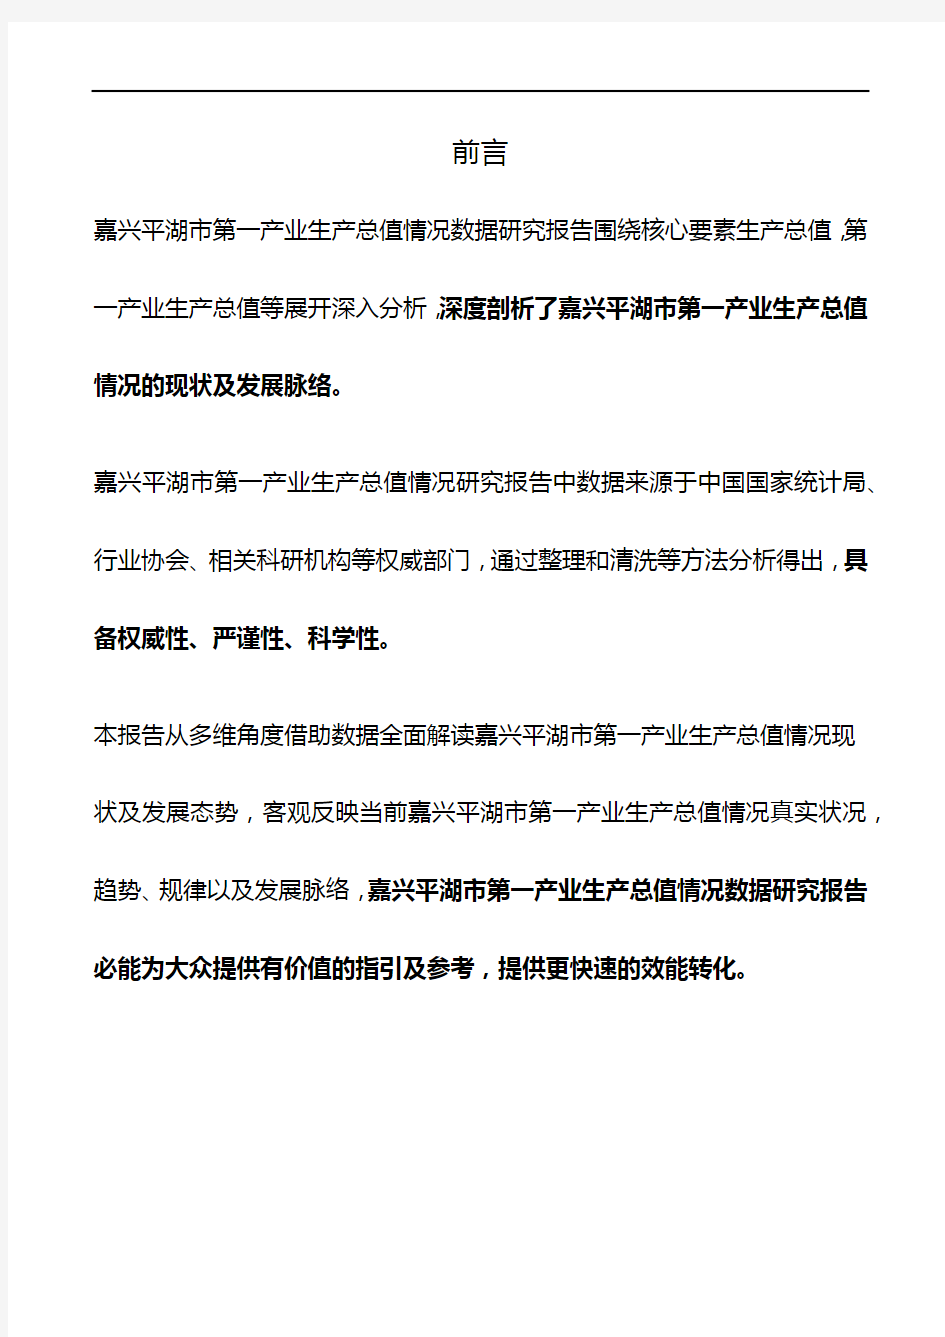 浙江省嘉兴平湖市第一产业生产总值情况数据研究报告2019版